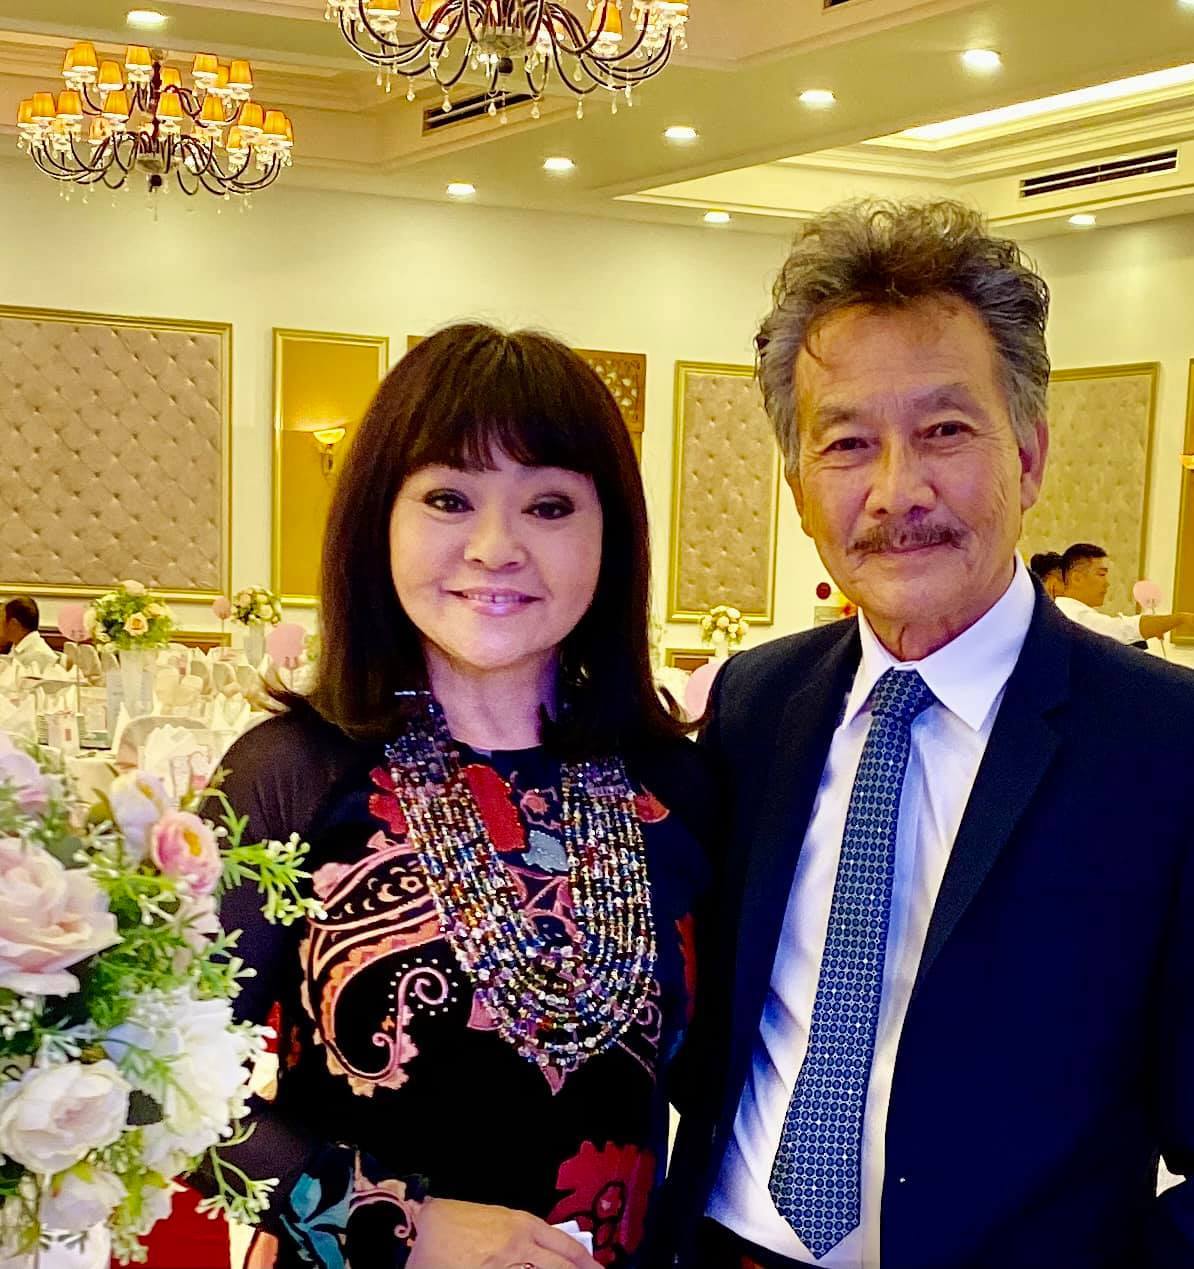 Ca sĩ Hương Lan giã từ sân khấu ở tuổi 67, ngại khi bị gọi là 'danh ca', hôn nhân hạnh phúc hơn 35 năm với chồng kĩ sư  - Ảnh 5